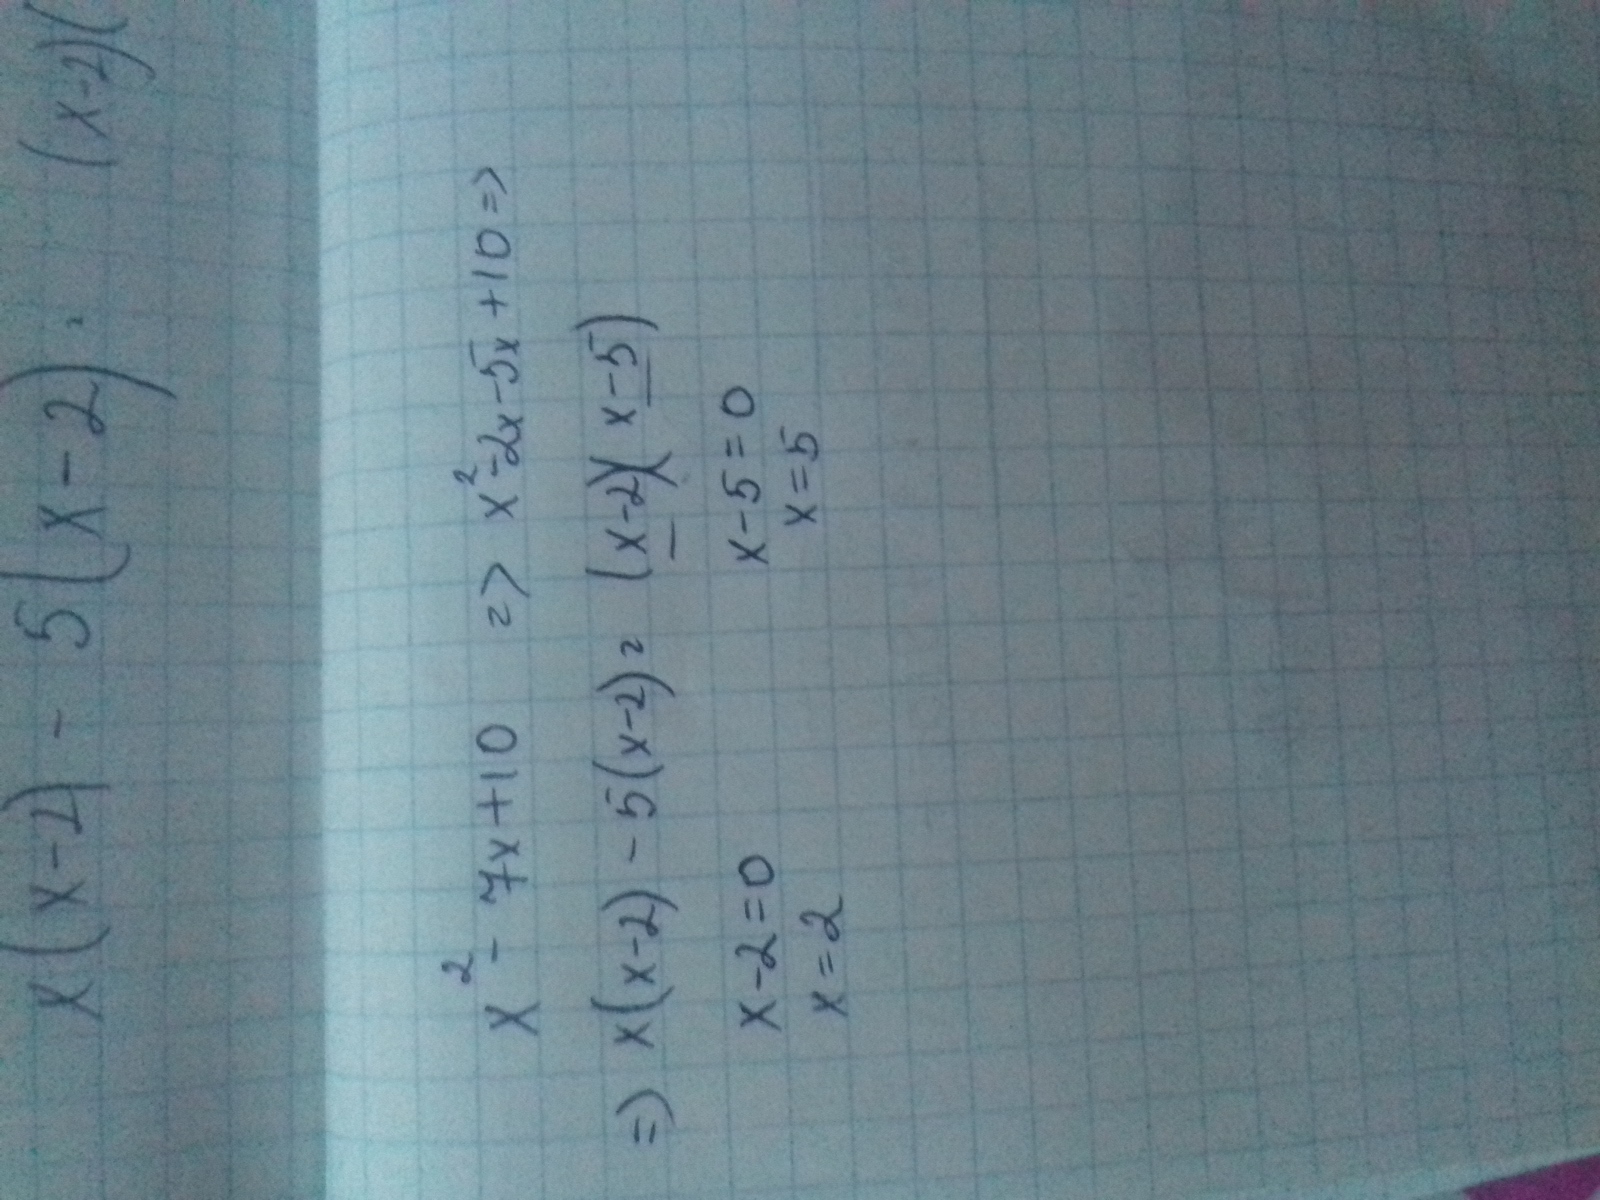 X2 7 x 10 0. Разложите на множители квадратный трехчлен. X 5 1 разложить на множители. Разложите на множители квадратный трехчлен x2+10x-24. .Разложите на множители квадратный трёхчлен х-5х-24.